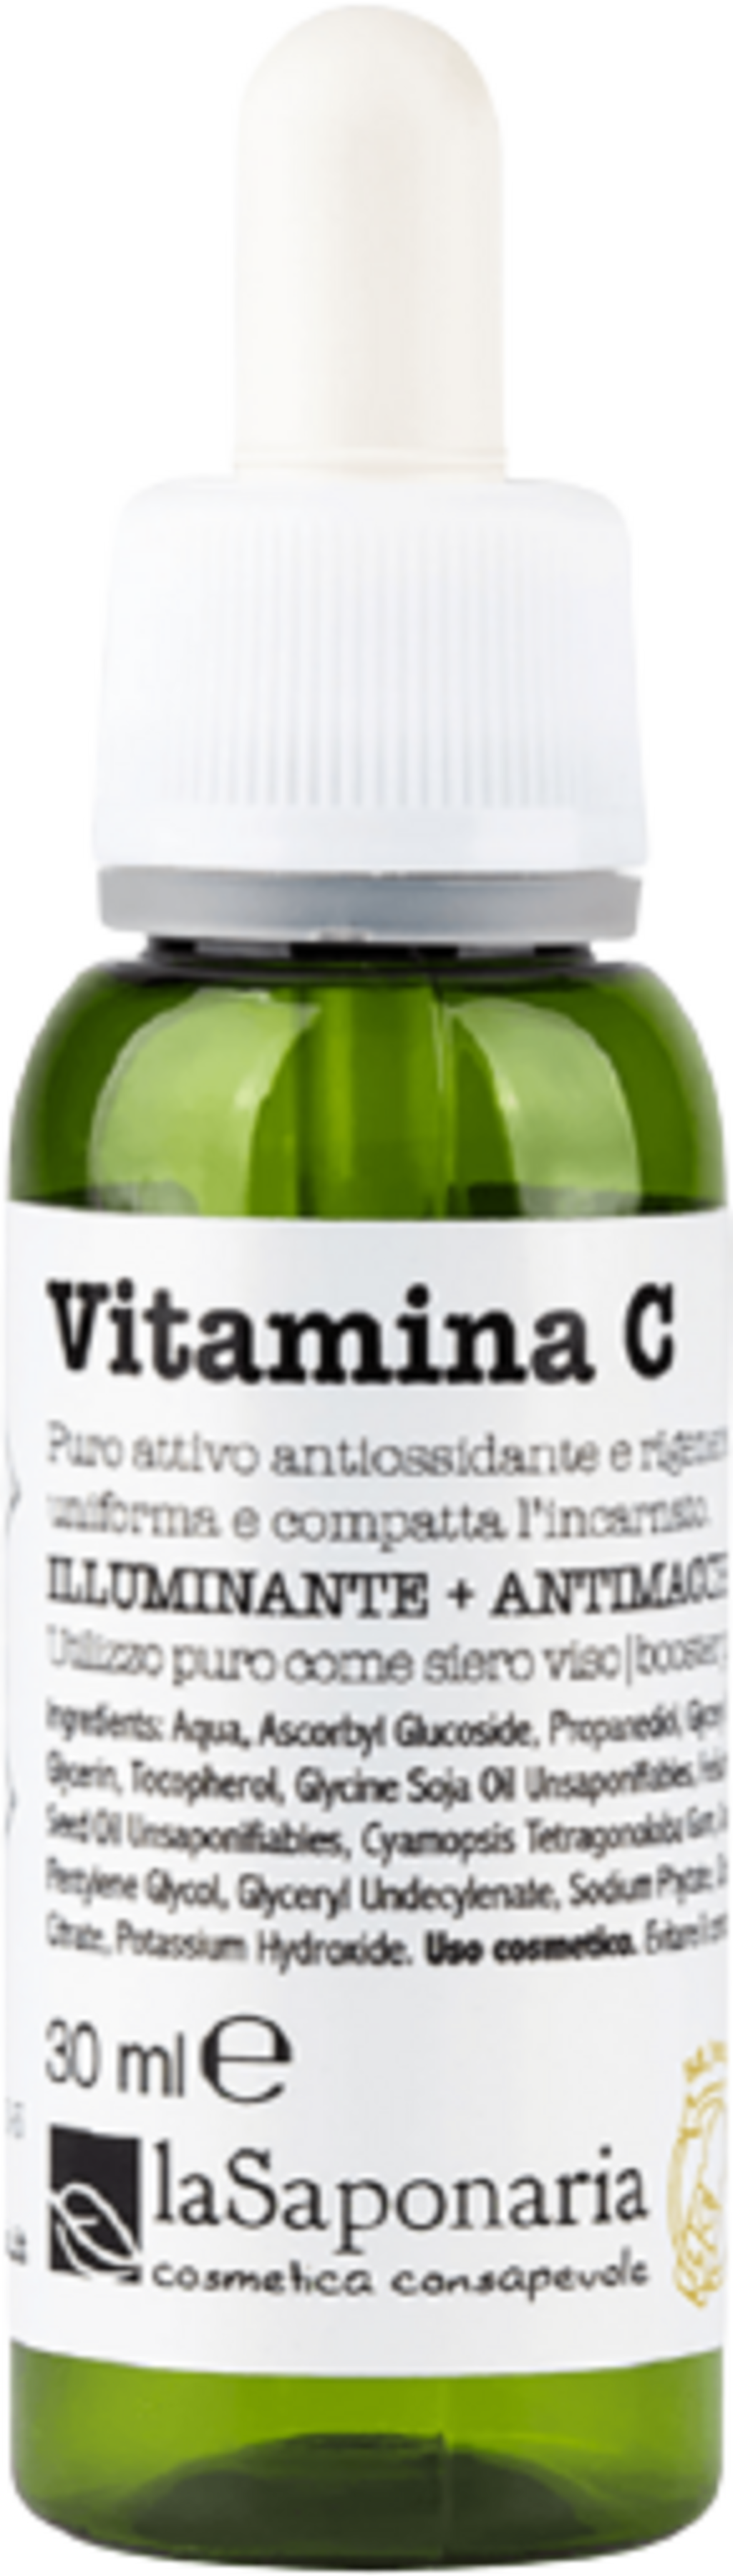 La Saponaria Vitamine C "Attivi Puri" - 30 ml